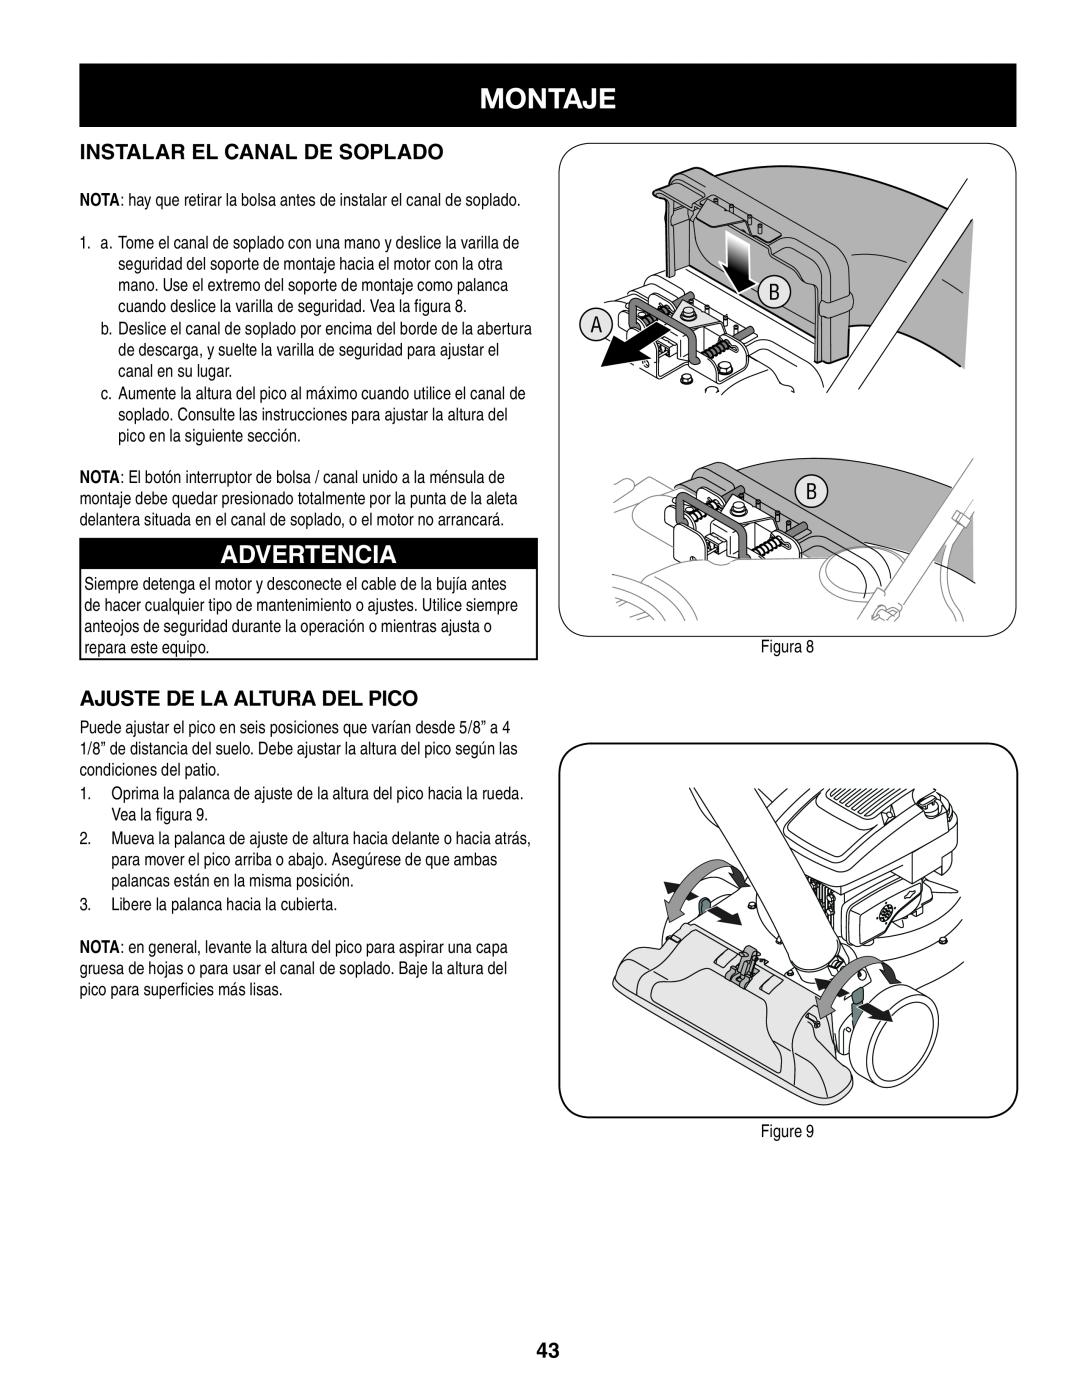 Craftsman 247.77013.0 manual Montaje, Advertencia, Instalar El Canal De Soplado, Ajuste De La Altura Del Pico 